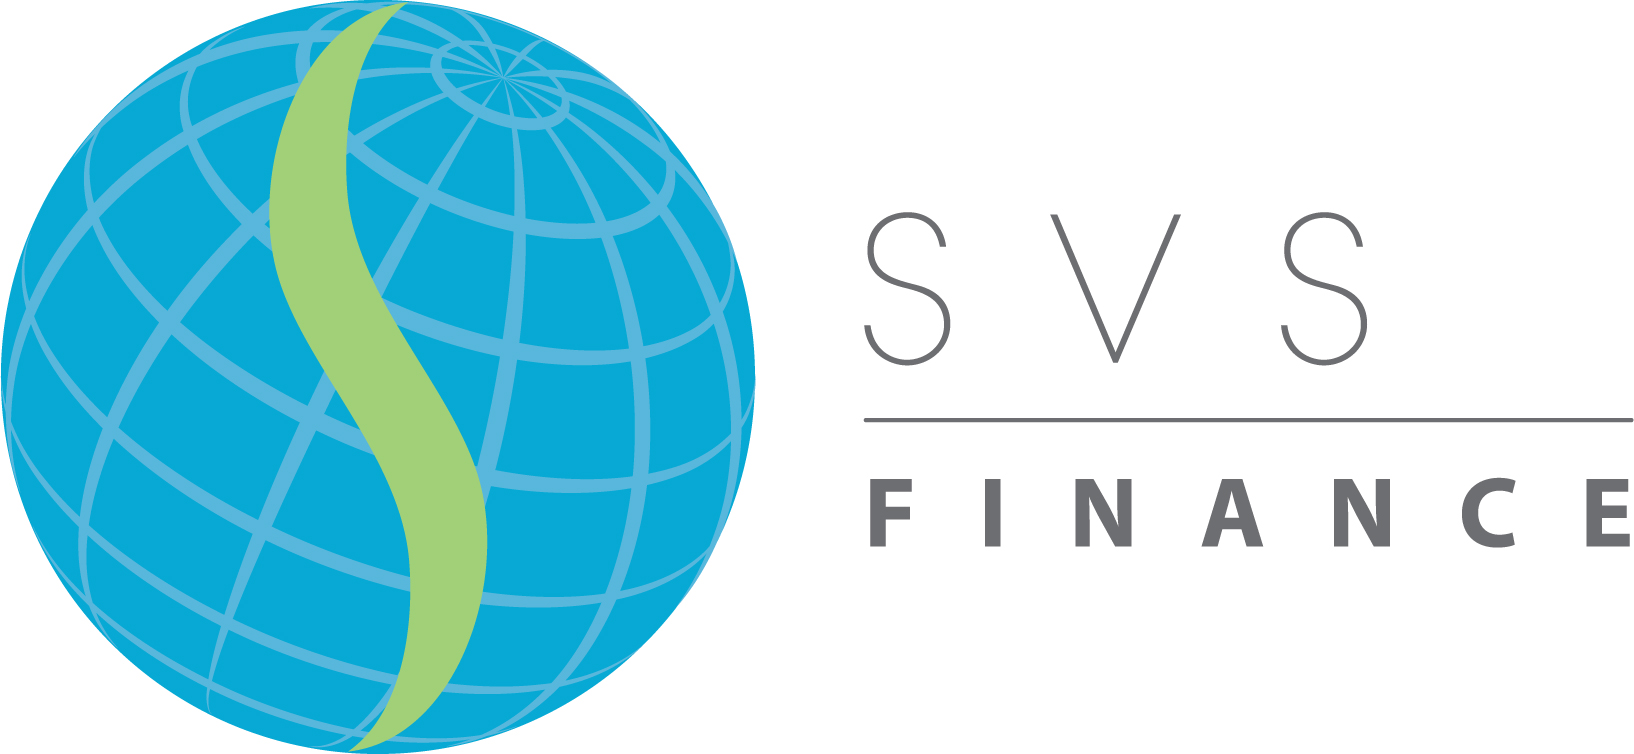 SVS Finance, Inc.